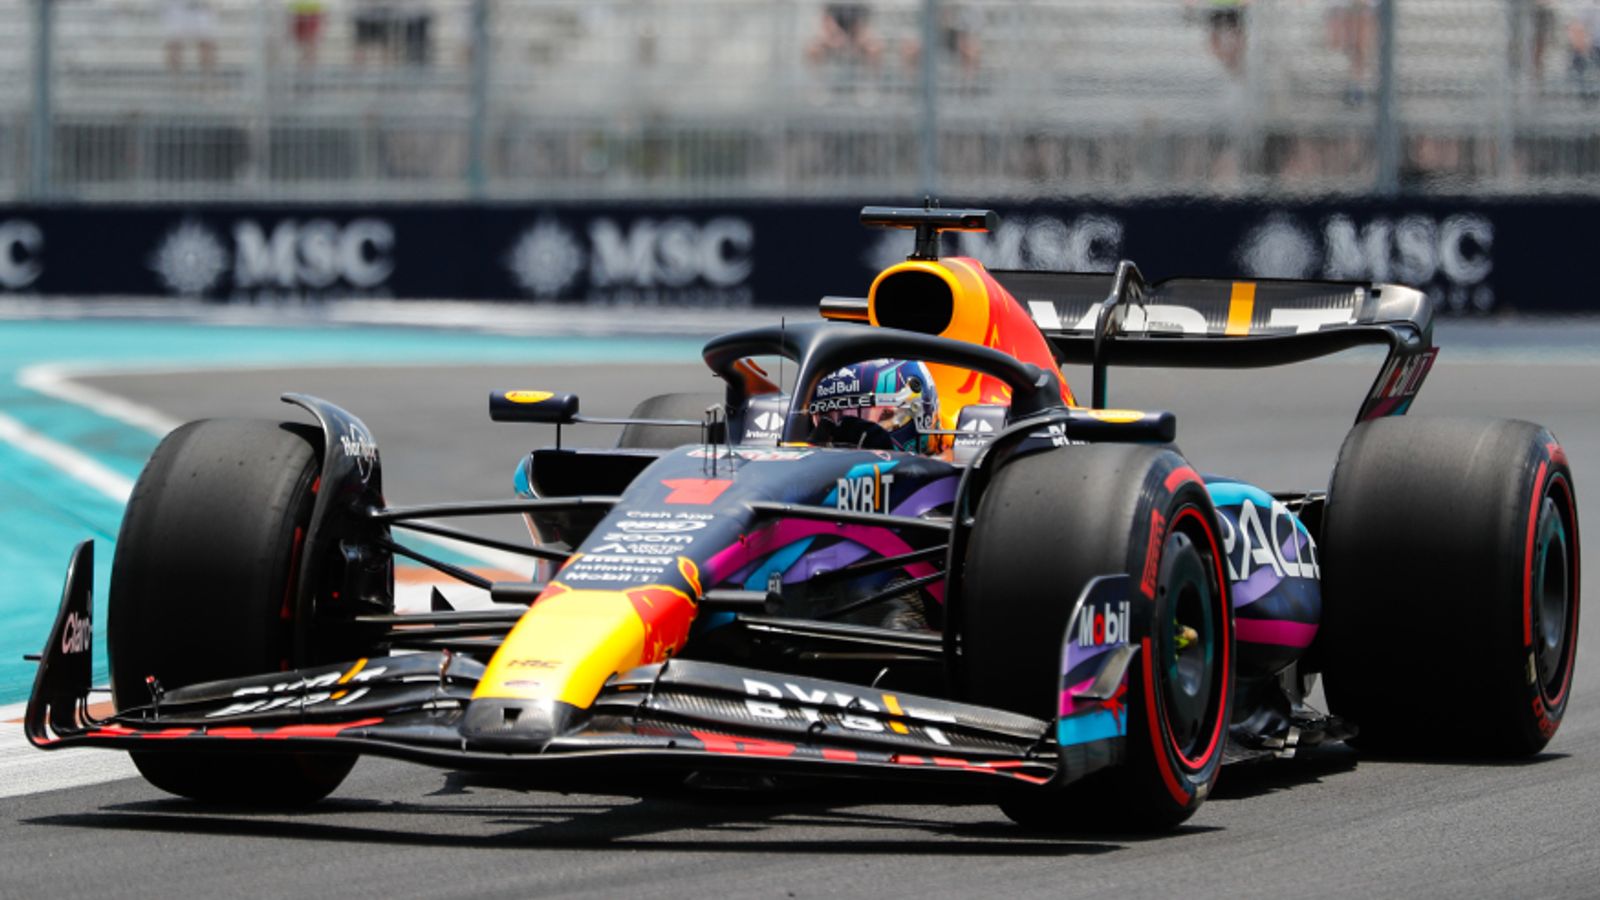 GP de Miami: Max Verstappen encabeza la práctica final mientras Red Bull continúa impresionando antes de la clasificación